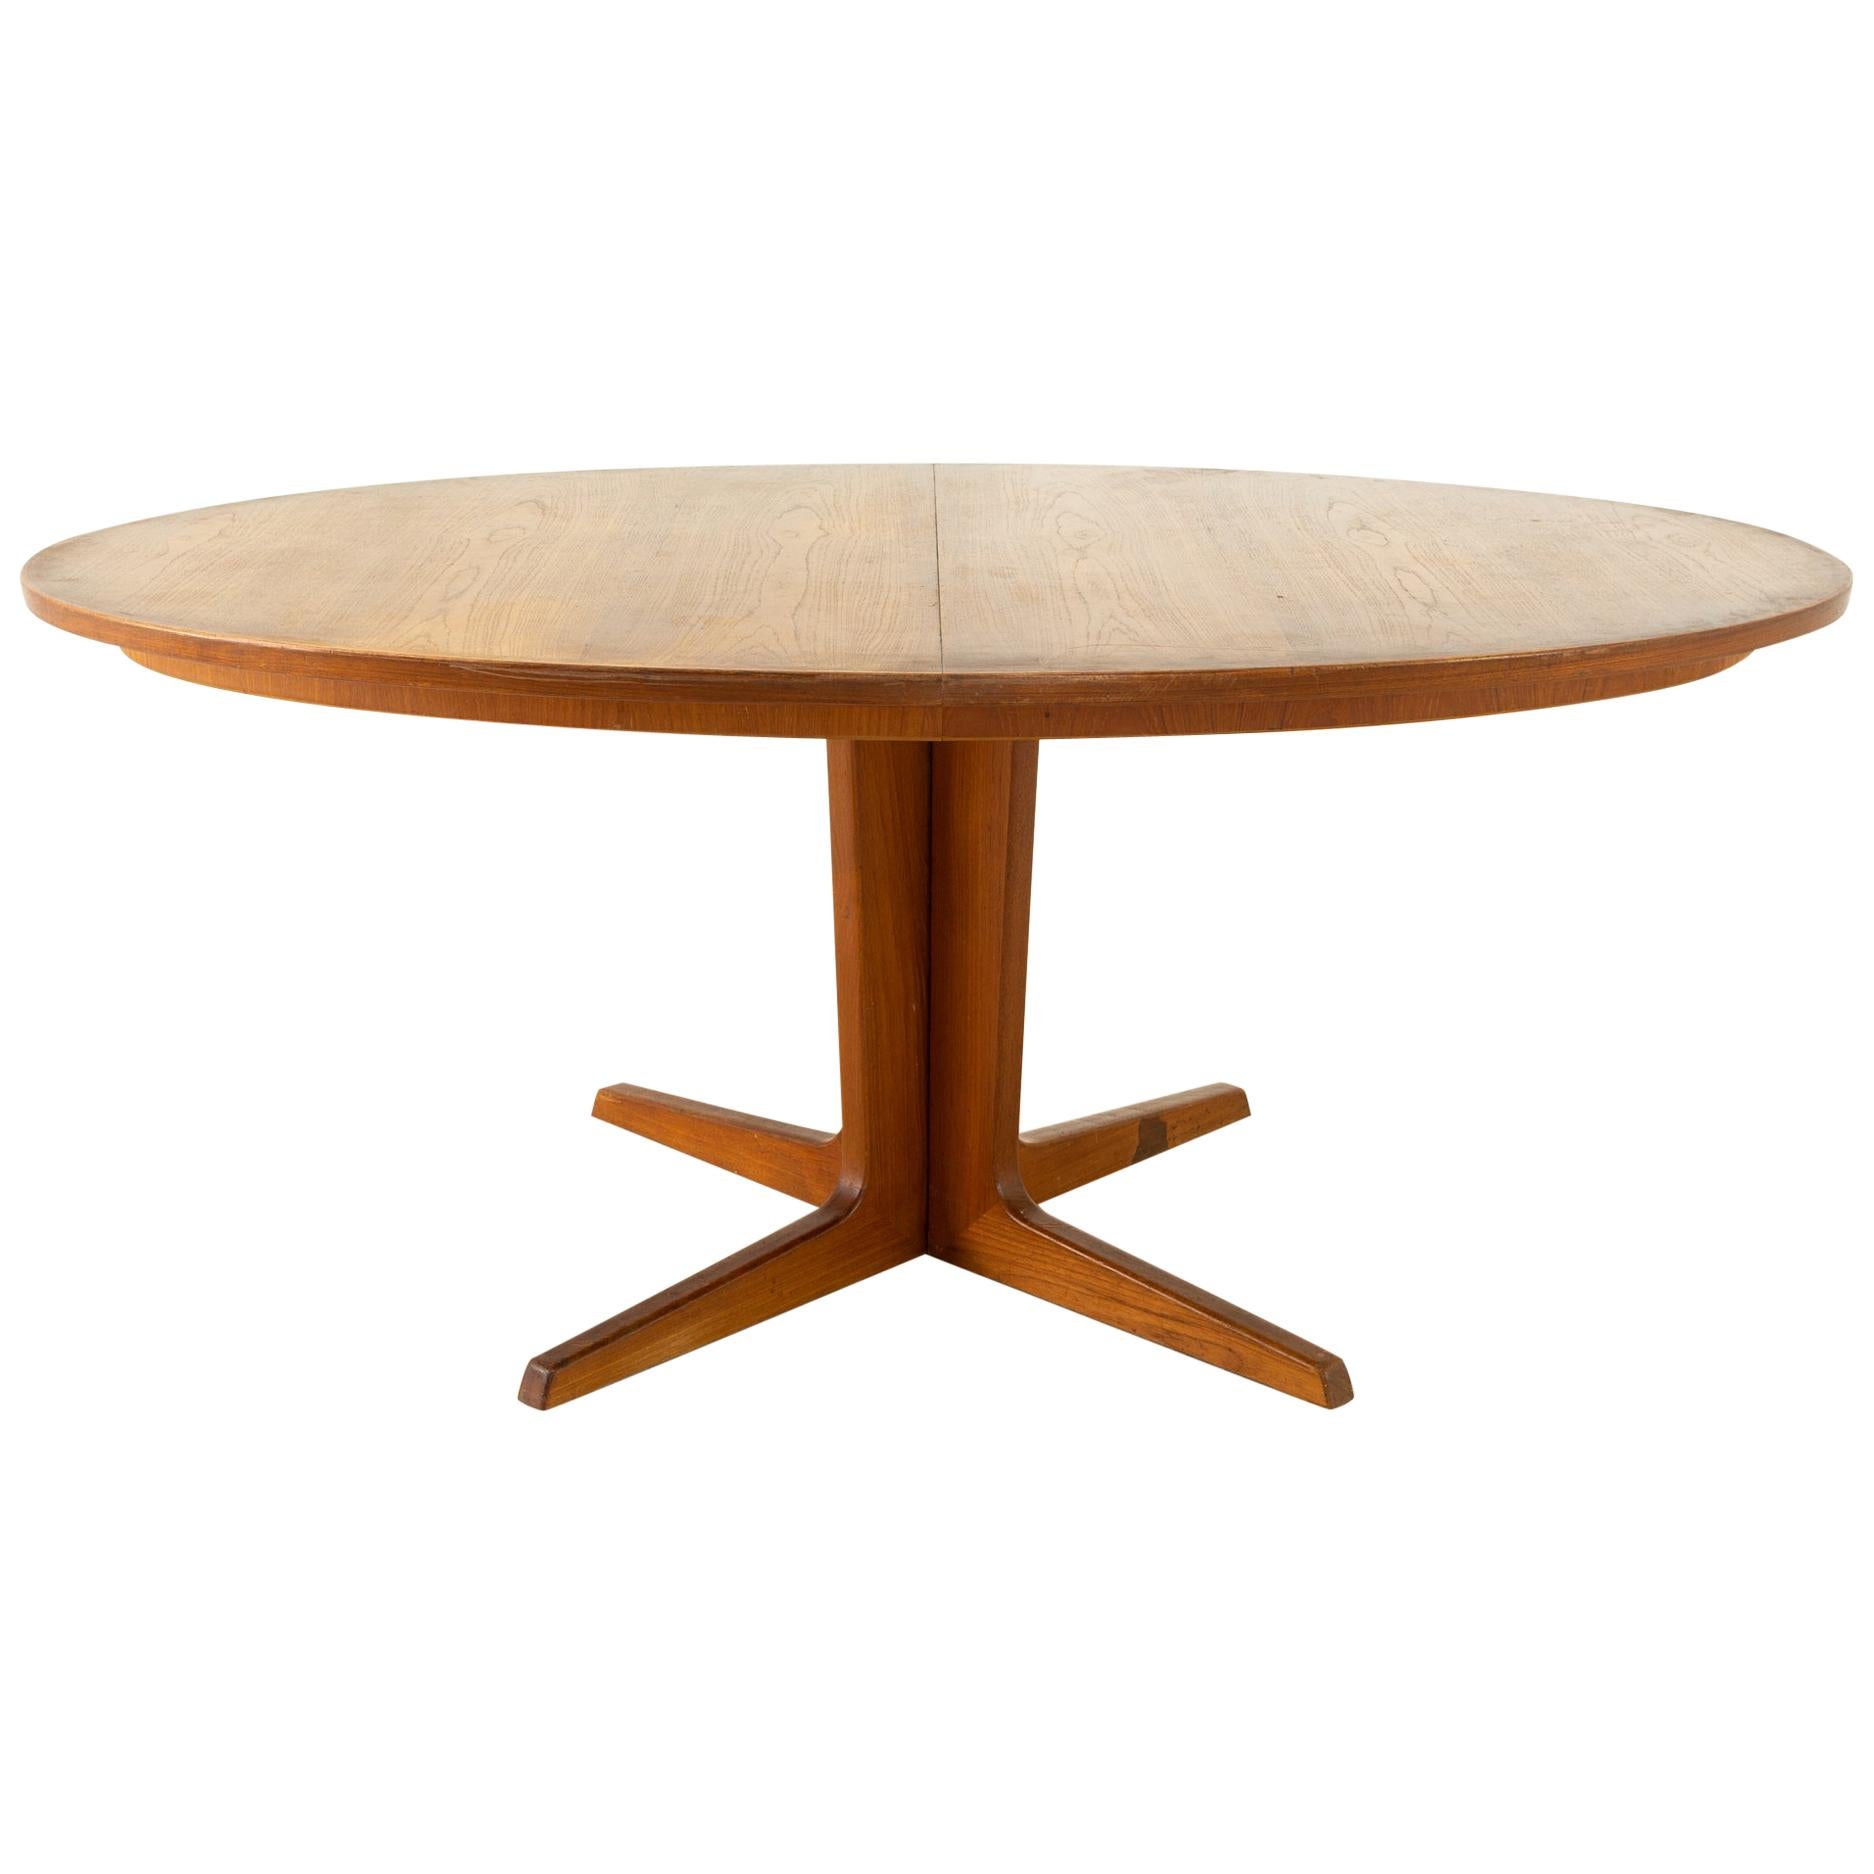 Niels Koefoeds for Uldum Mobelfabrik Mid Century Danish Teak Oval Dining Table